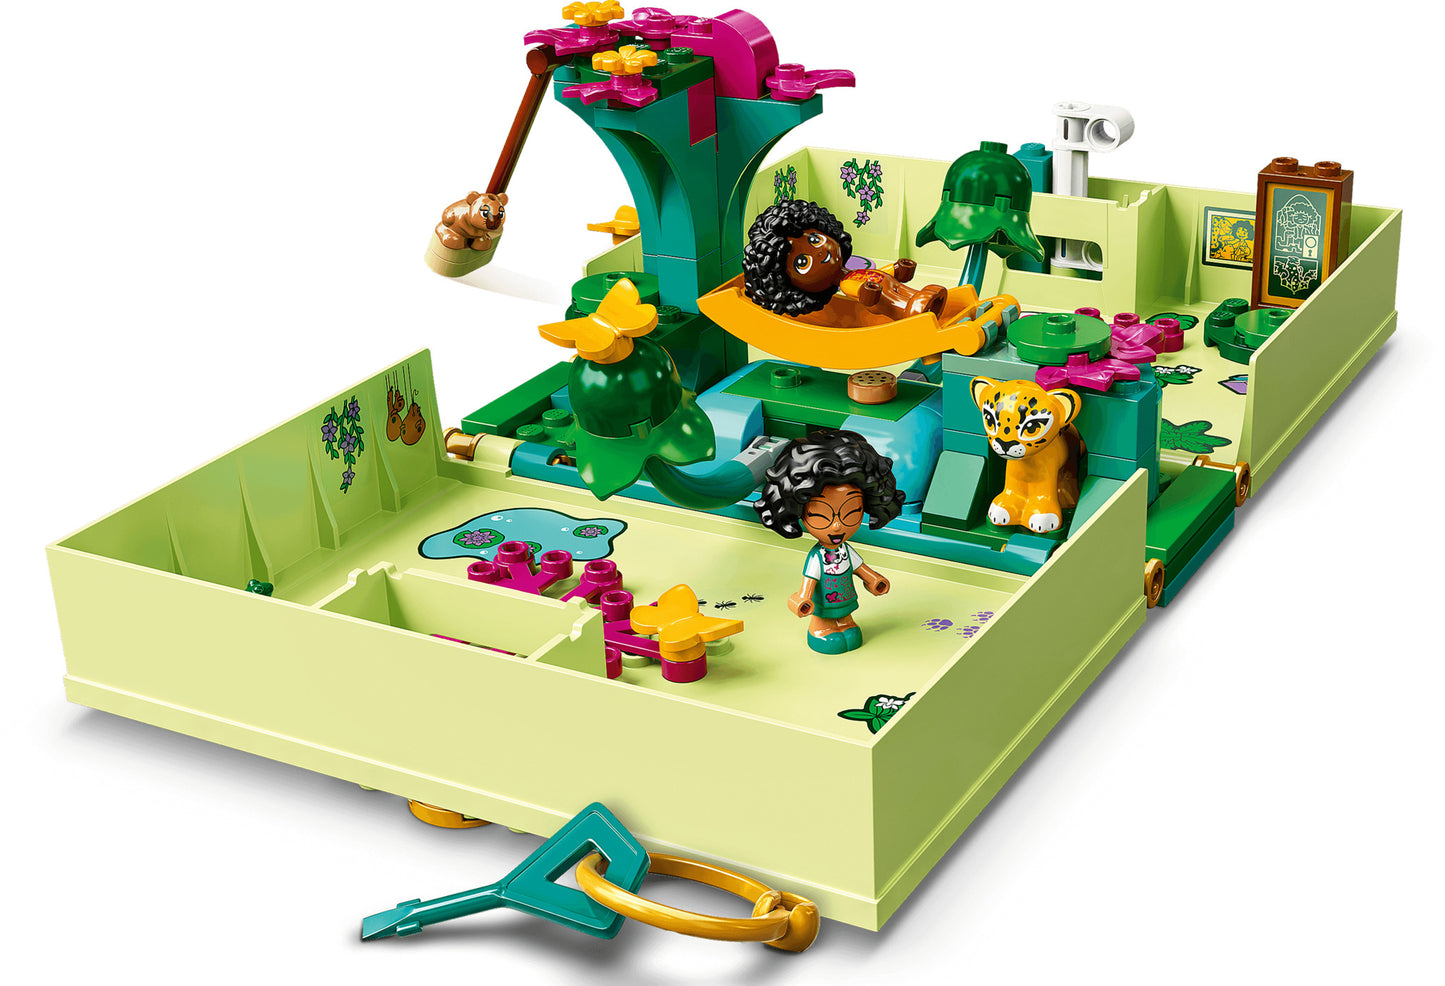 43200 LEGO Disney - La Porta Magica di Antonio